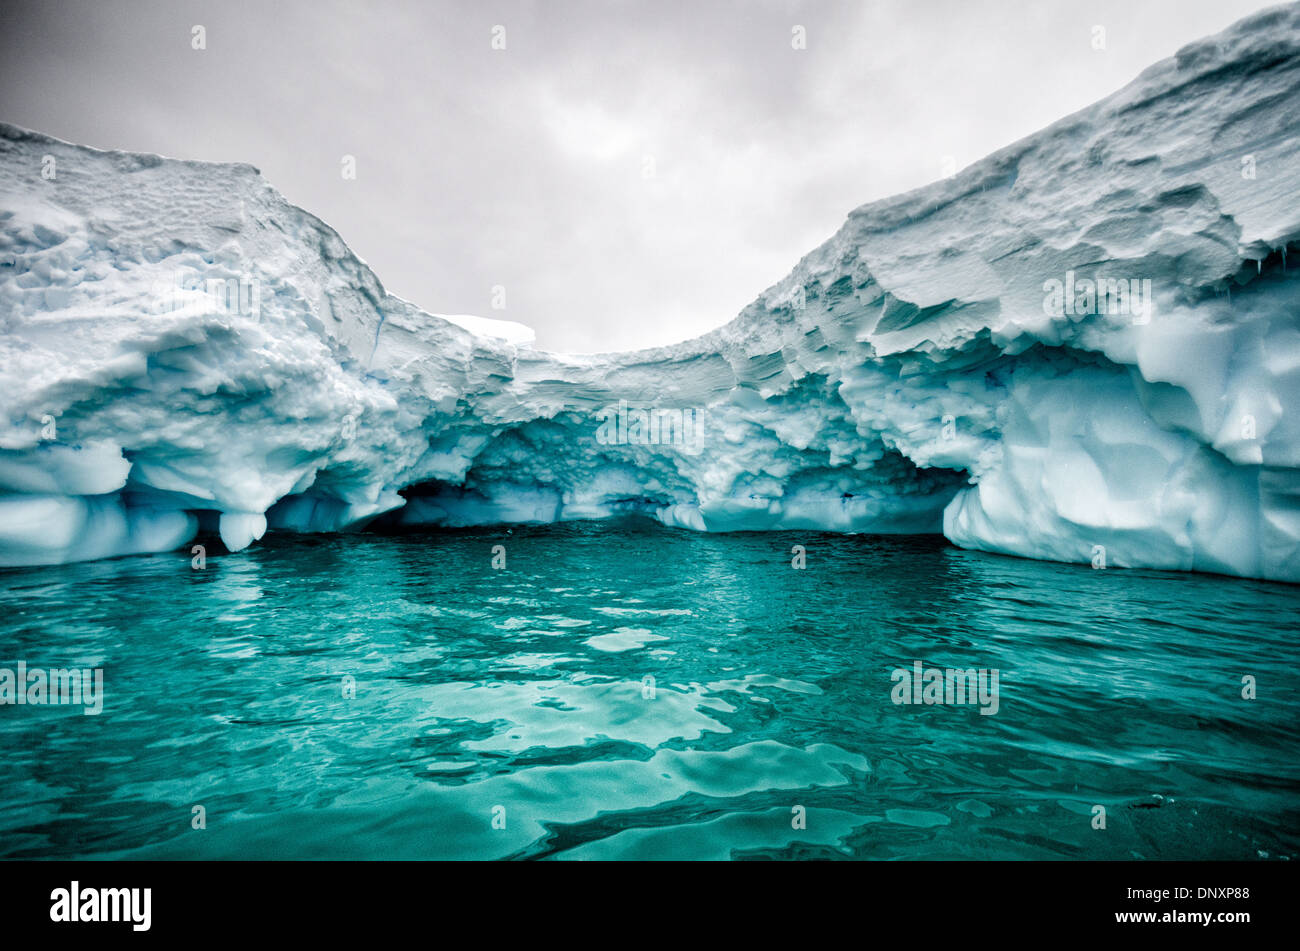 Antarktis - ein Schuss aus einer kleinen Abdeckung durch einen Eisberg geschaffen, mit dem Grün der Unterwasser Segment des Eisbergs im Vordergrund. Curtis Bucht, Antarktis. Stockfoto